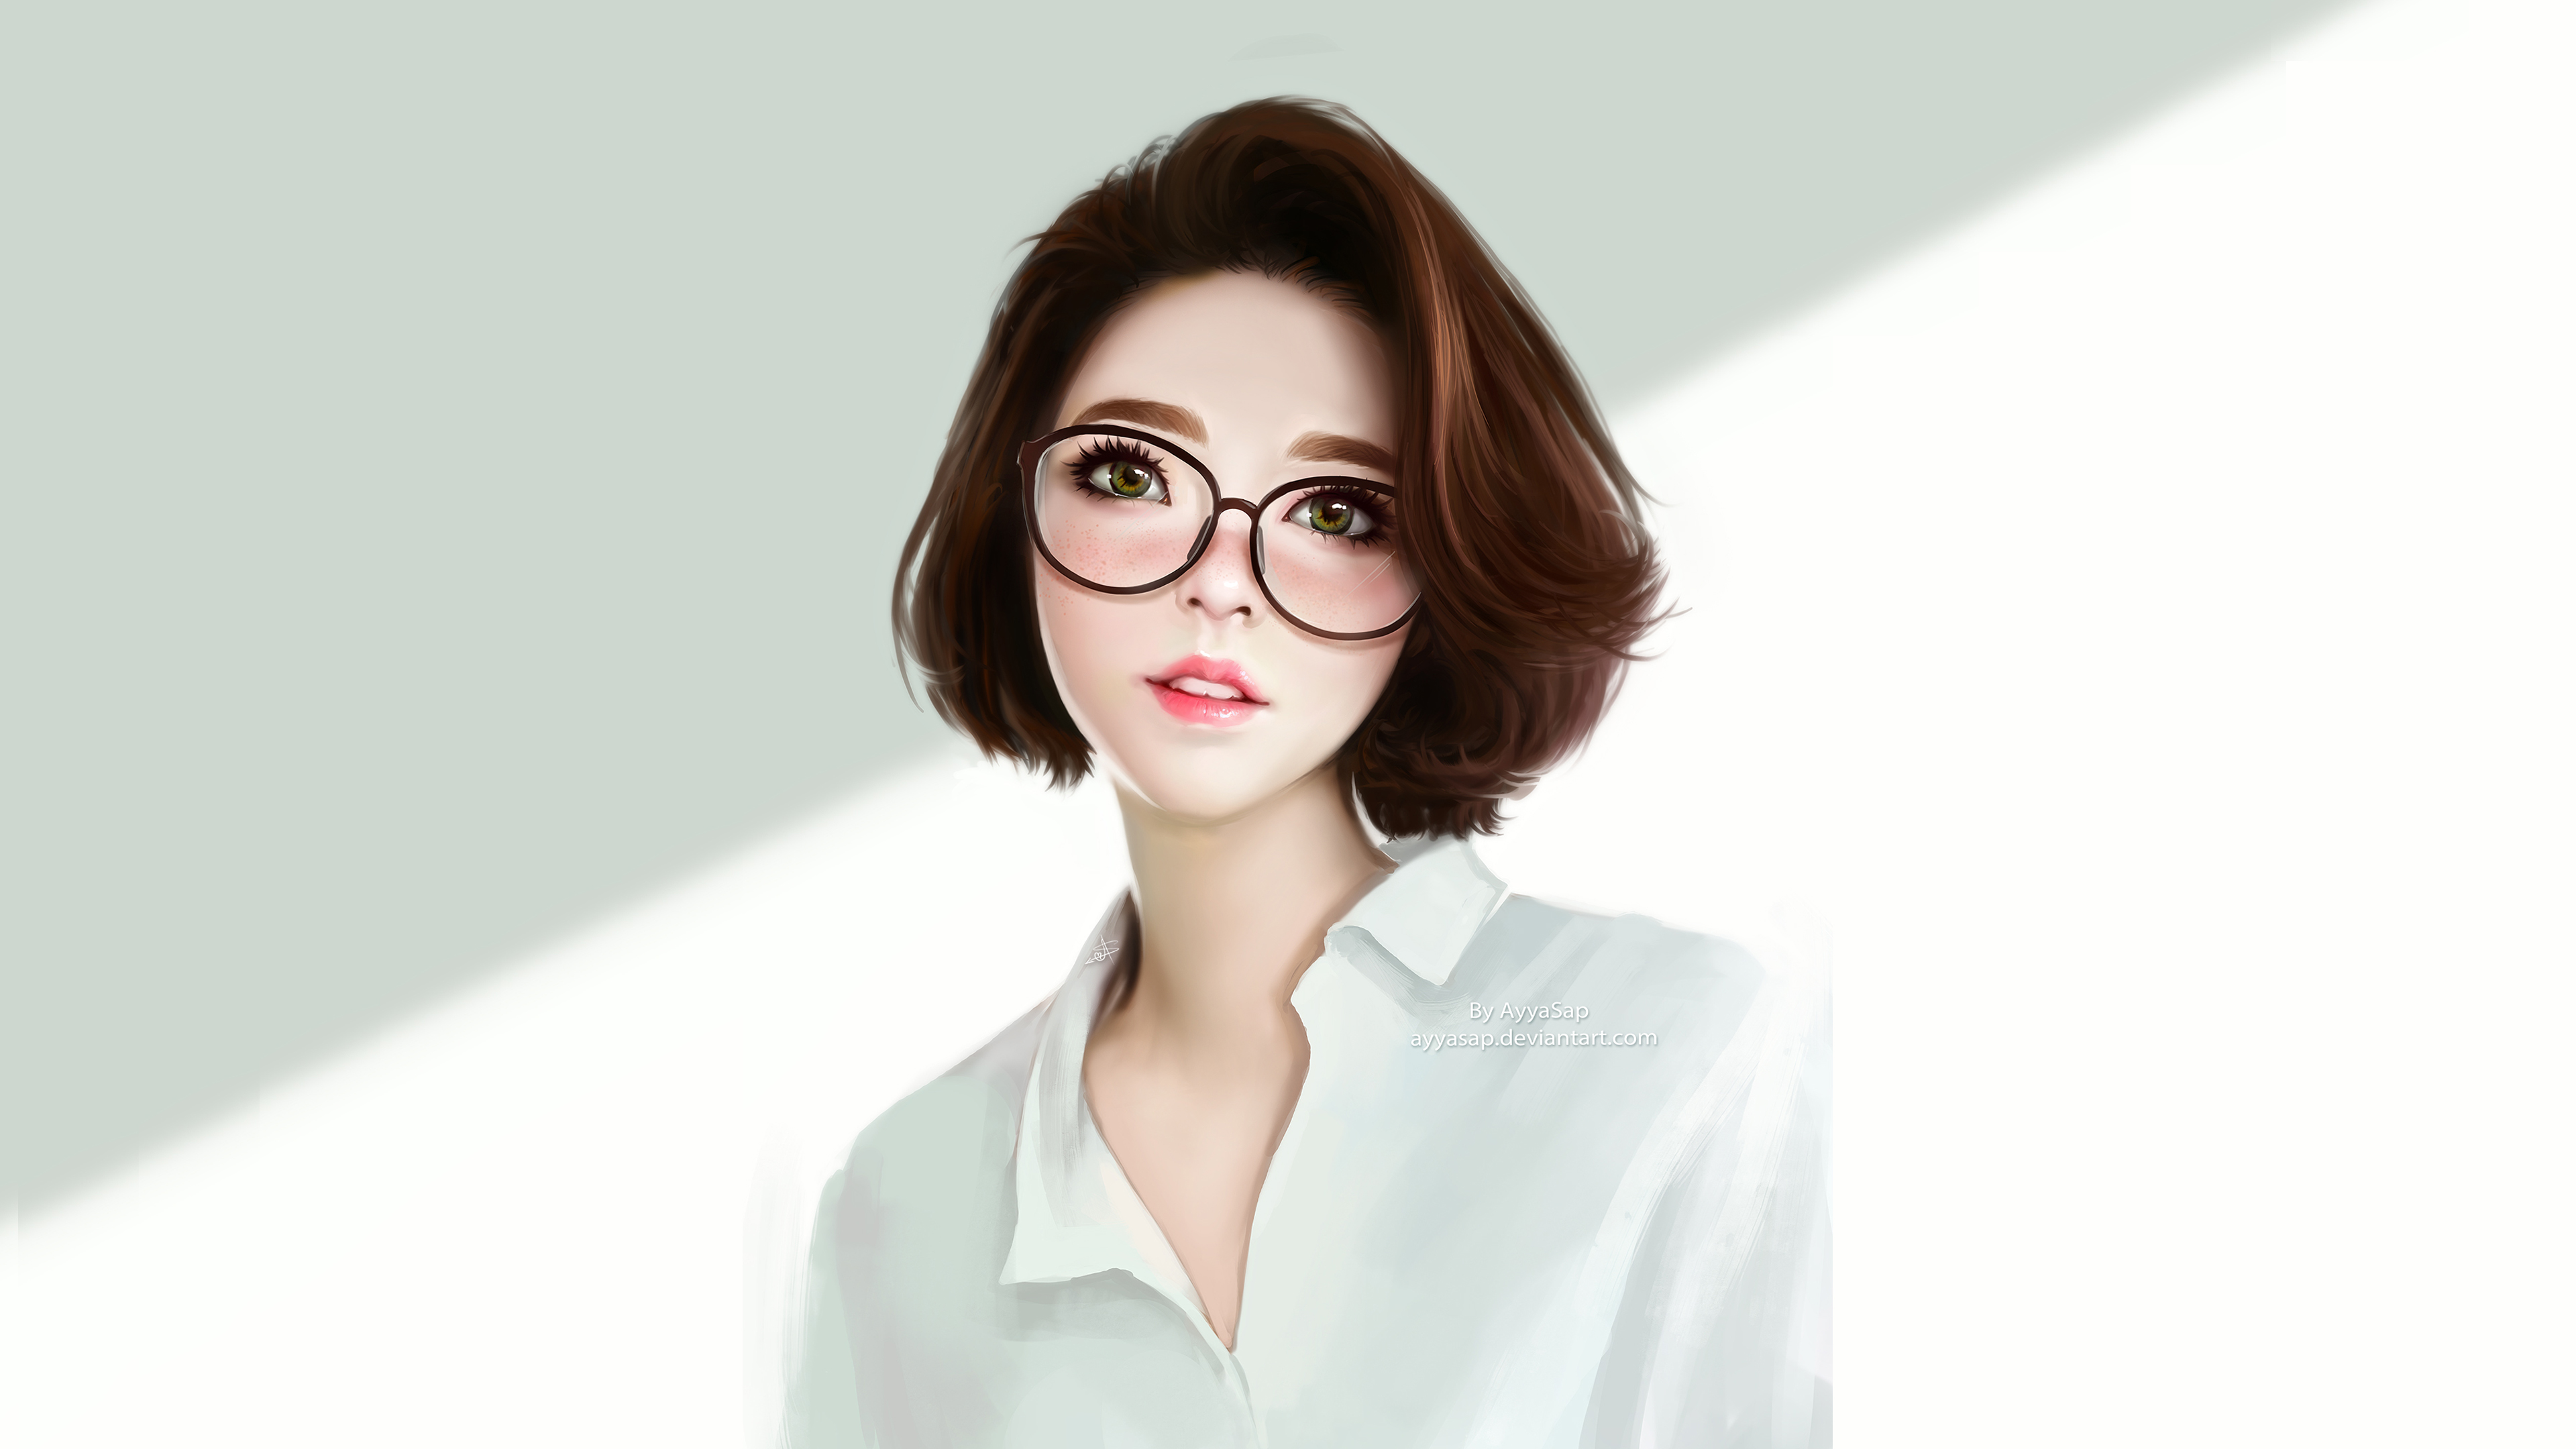 Anime Girl Green Eyes Glasses 4k, HD Anime, 4k Wallpapers, Images